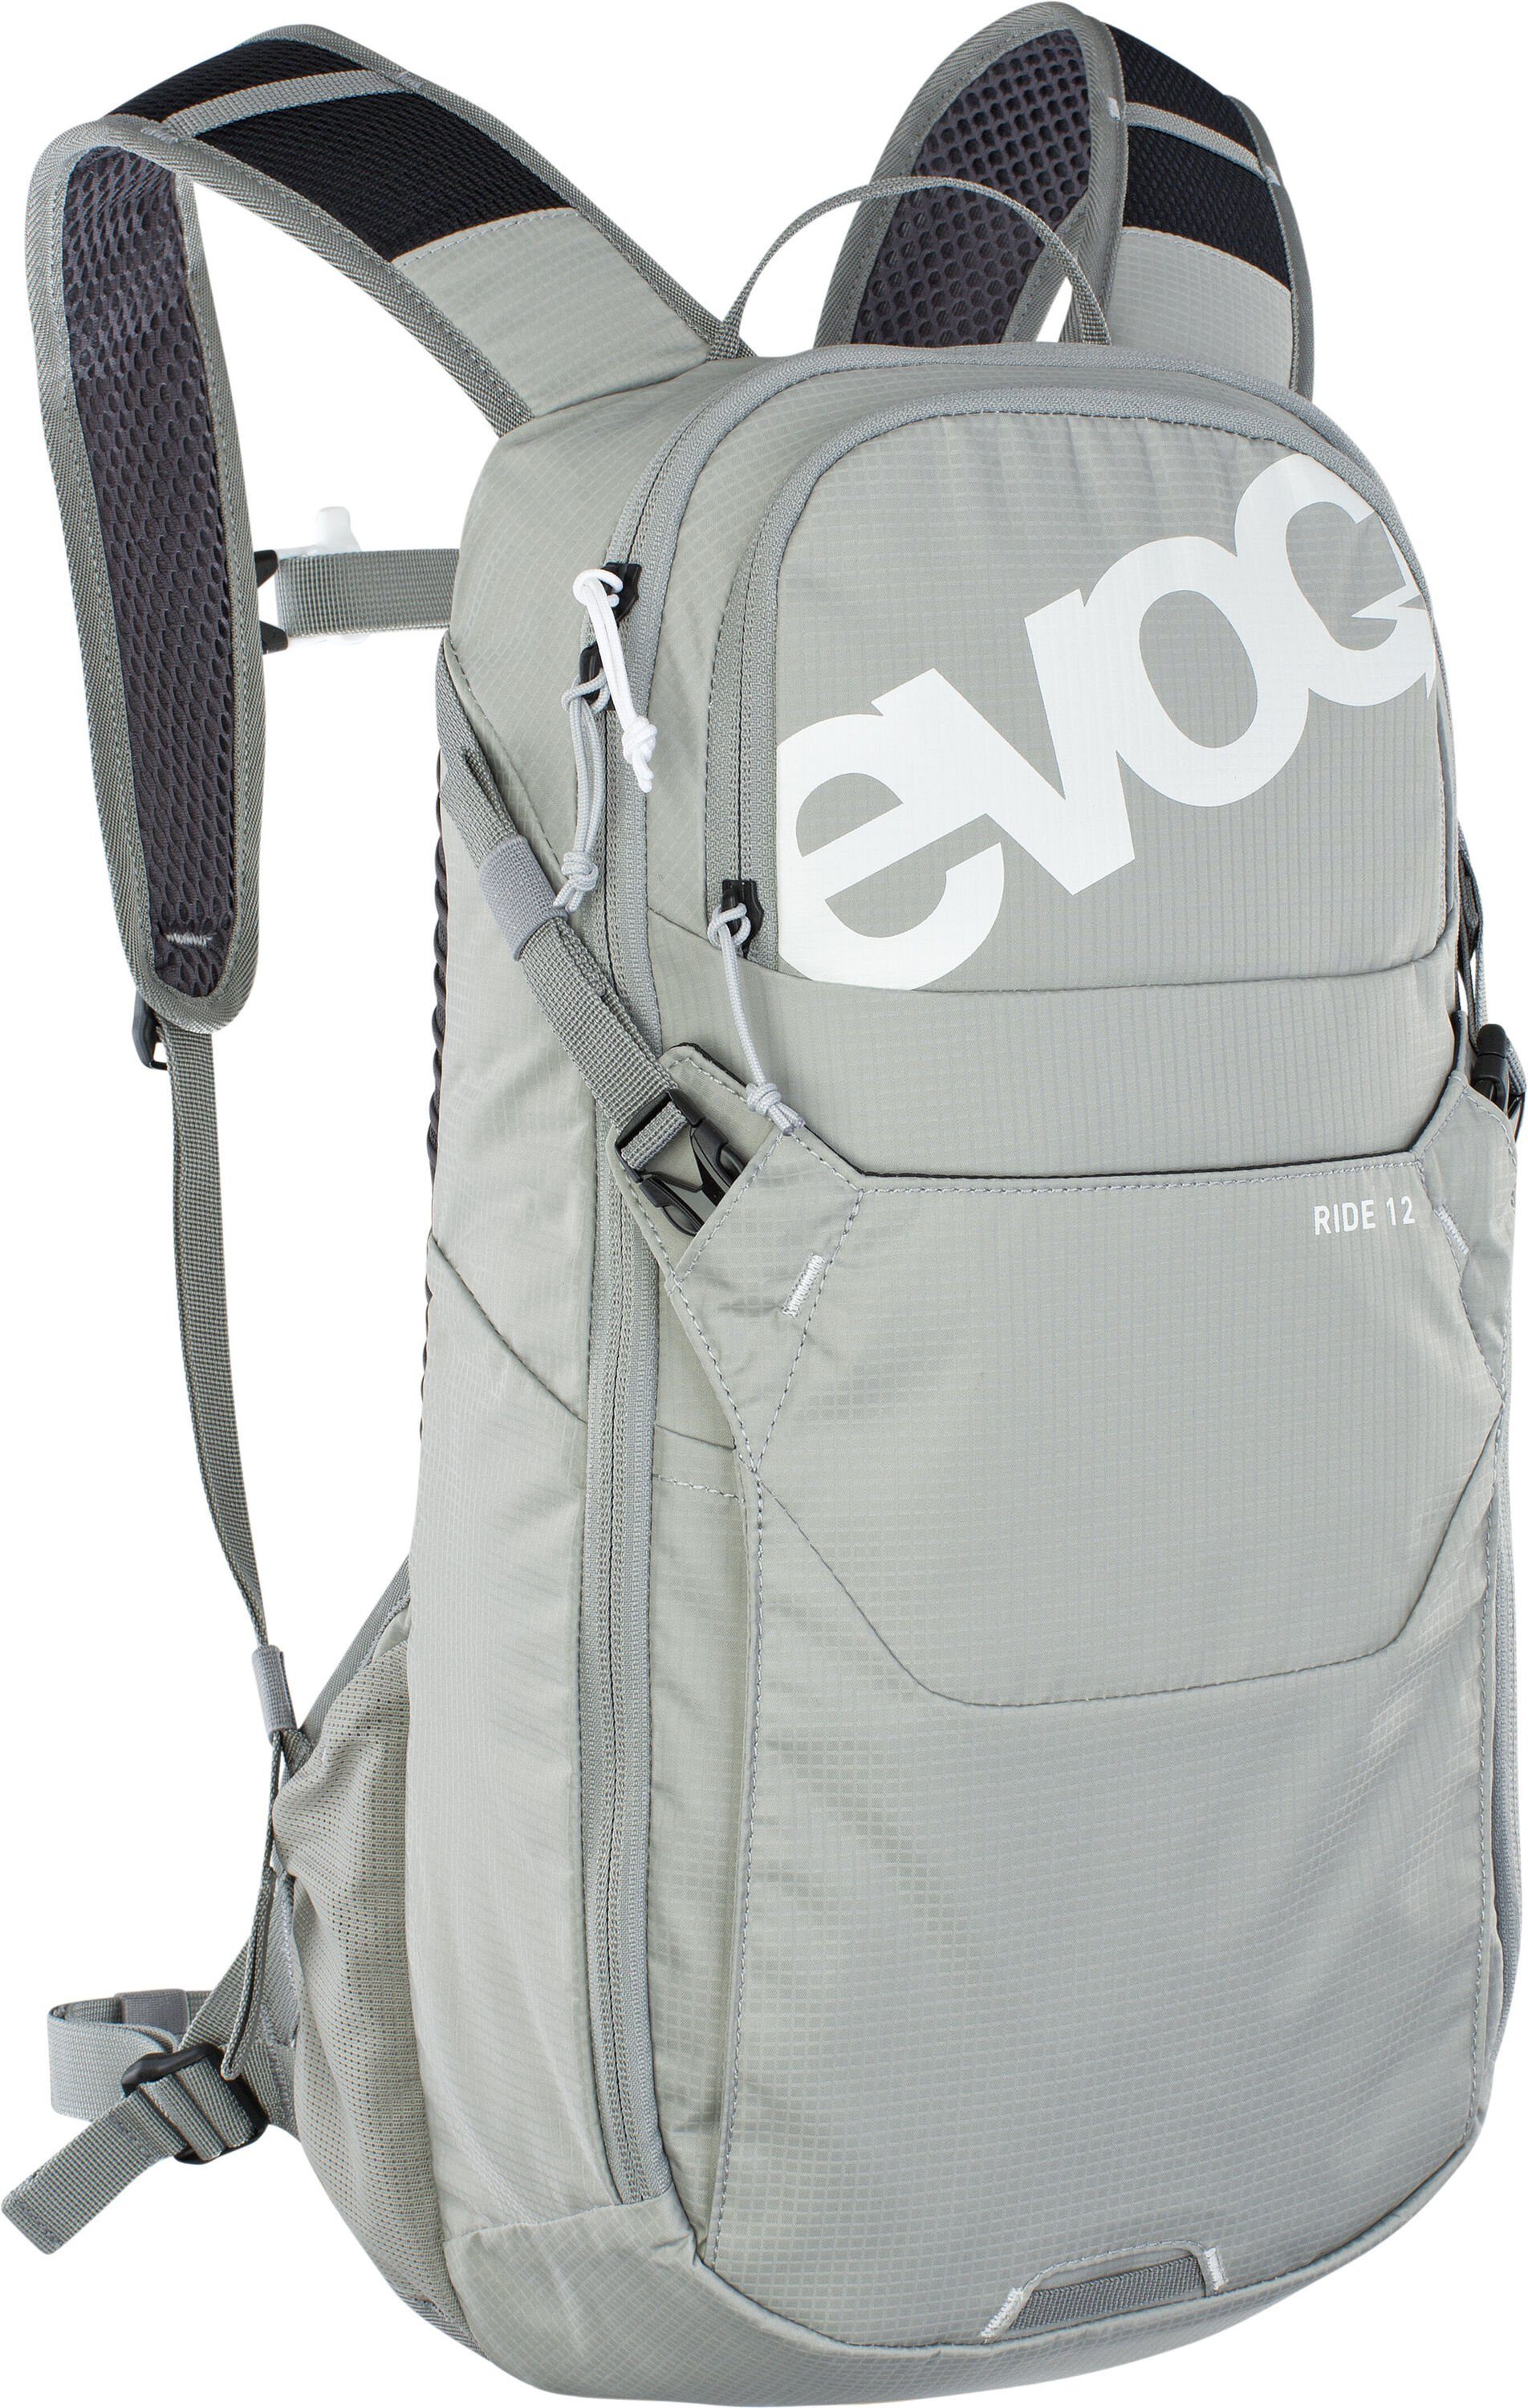 EVOC Packsack, fürs Biken und den Alltag